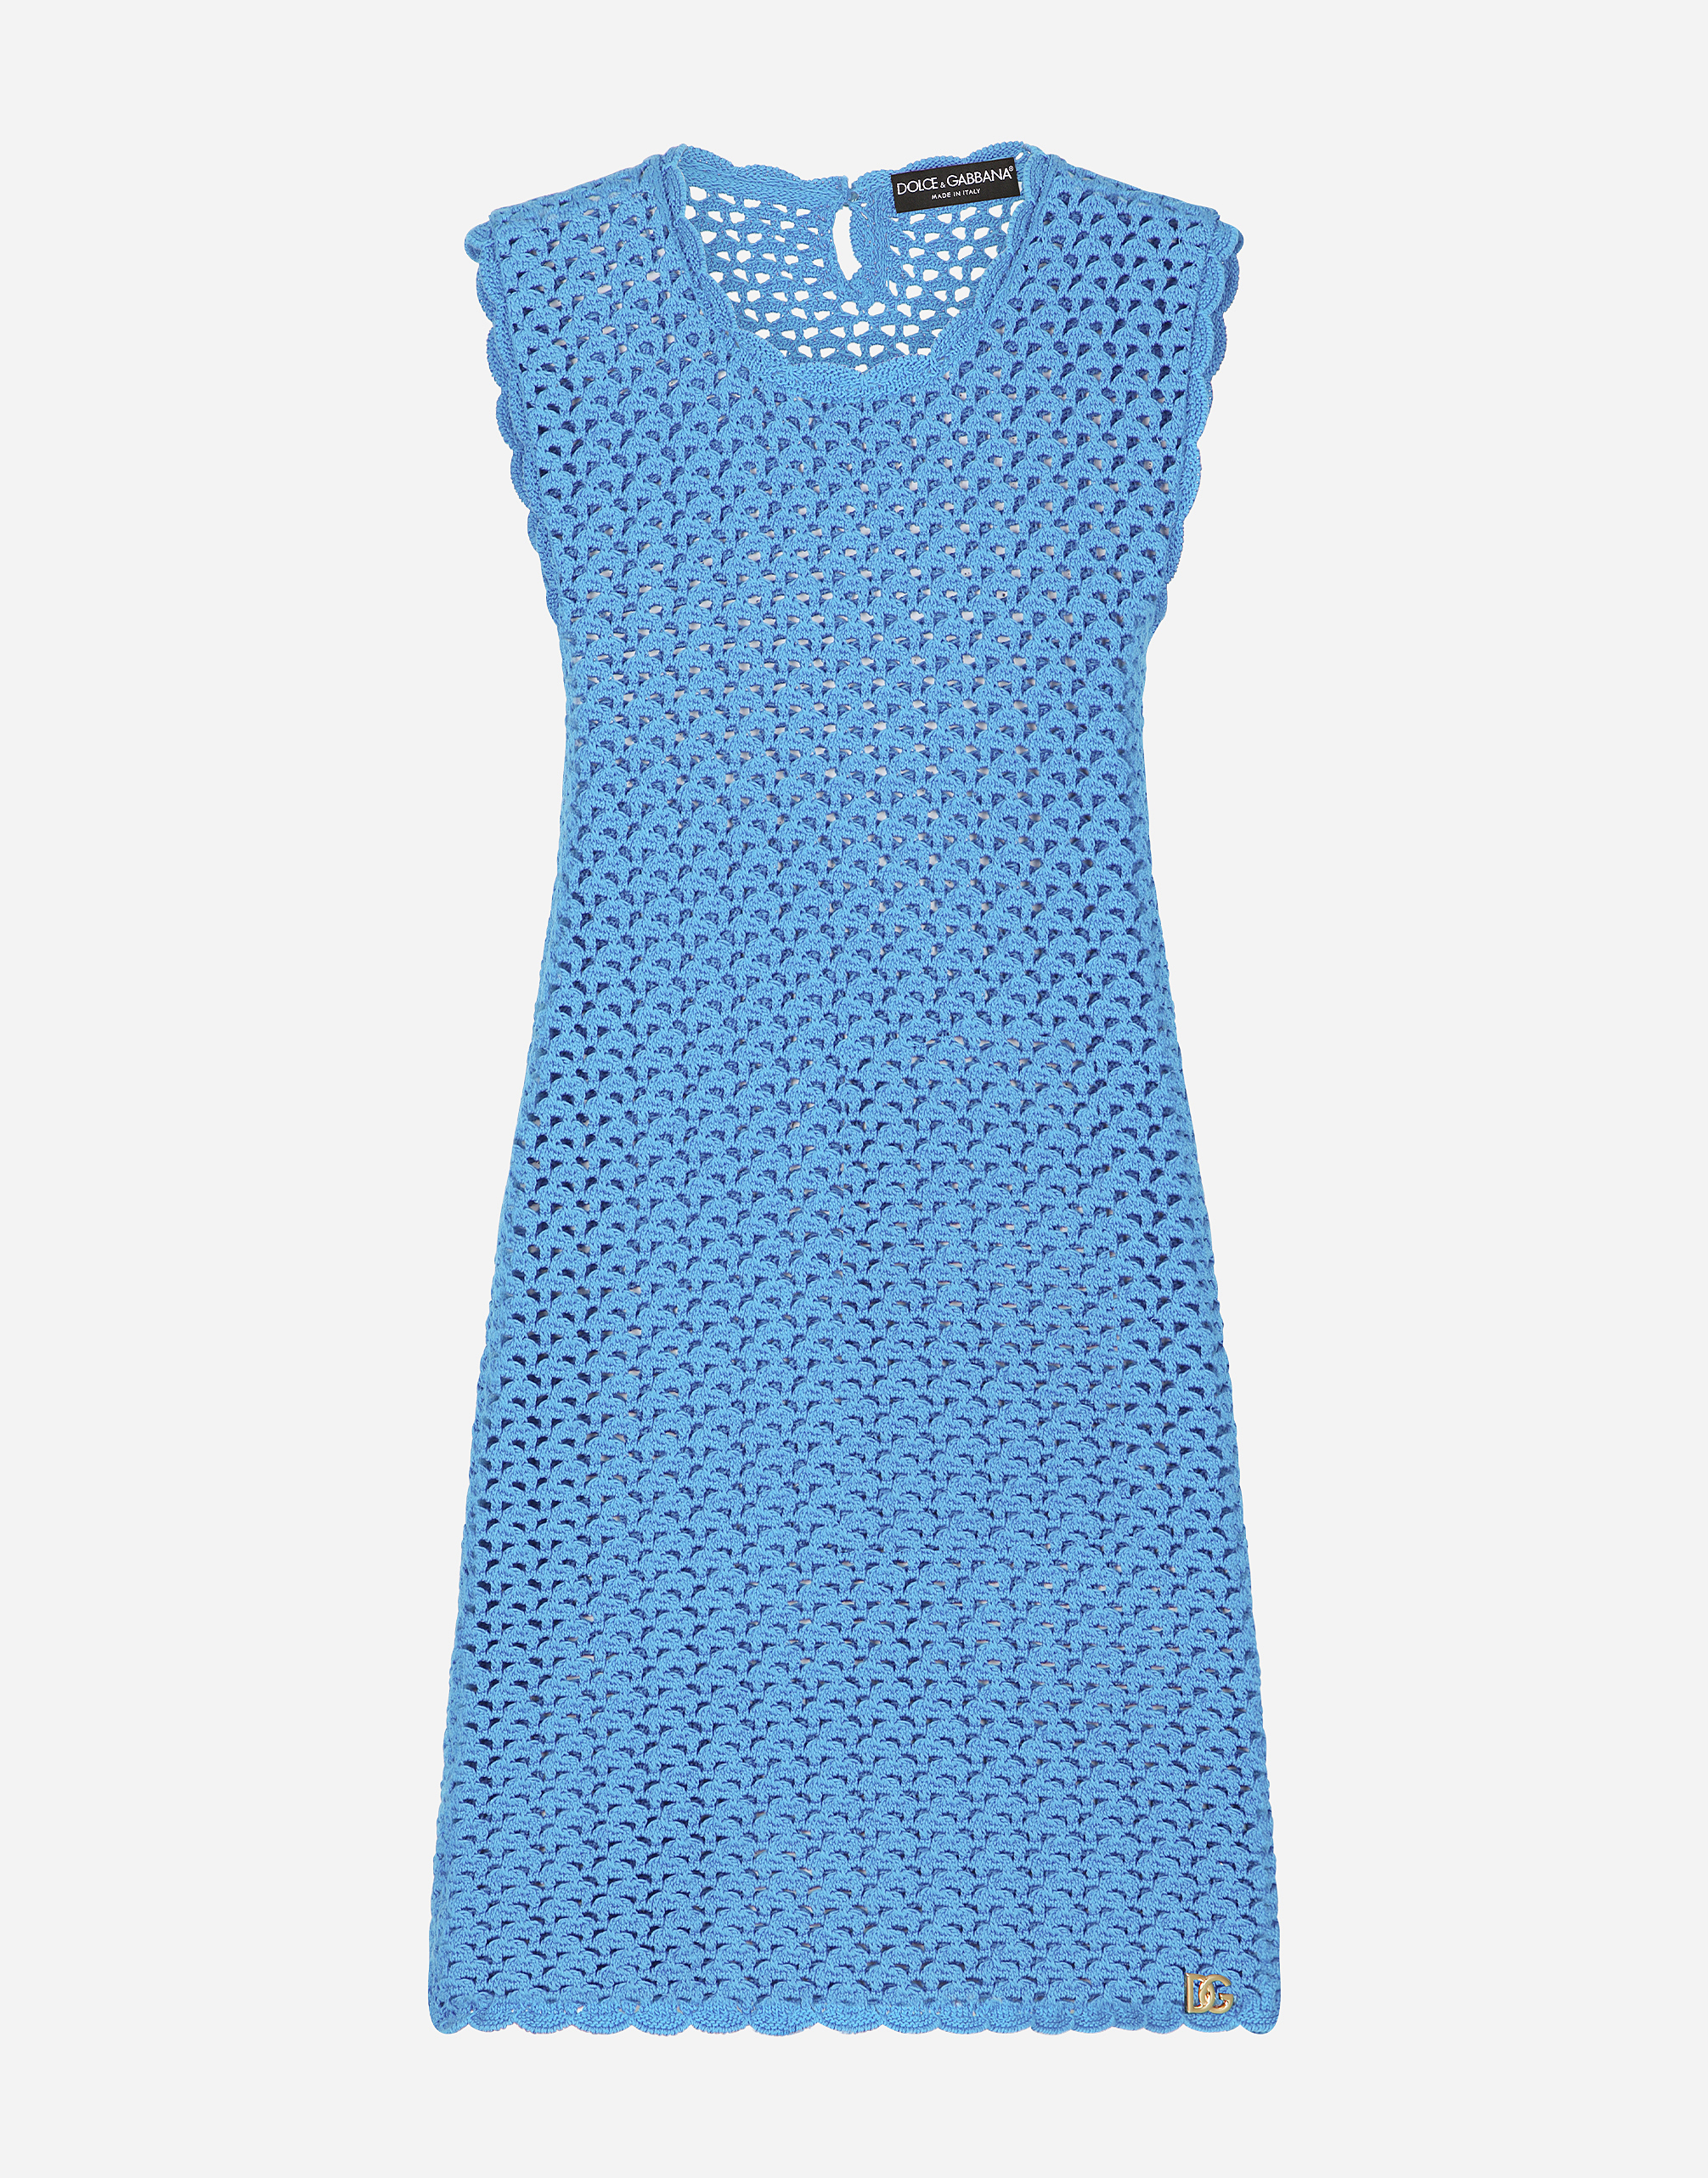 Dolce & Gabbana Sleeveless Crochet-knit Minidress In Light_turquoise